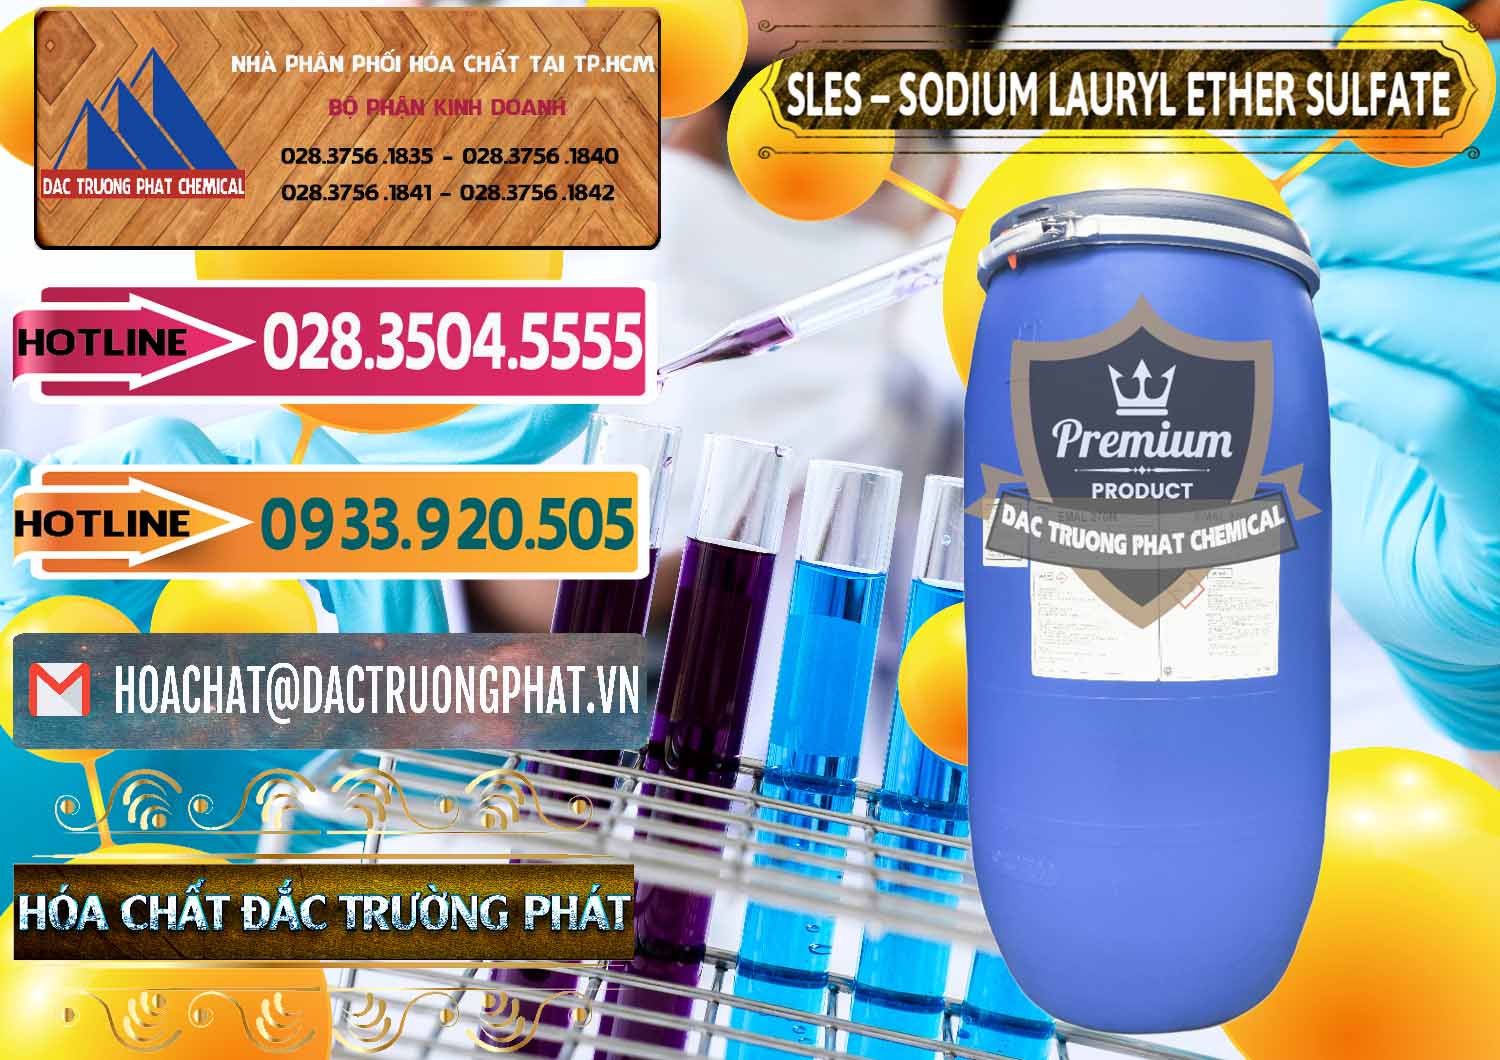 Đơn vị bán _ phân phối Chất Tạo Bọt Sles - Sodium Lauryl Ether Sulphate Kao Indonesia - 0046 - Nơi cung cấp & phân phối hóa chất tại TP.HCM - dactruongphat.vn